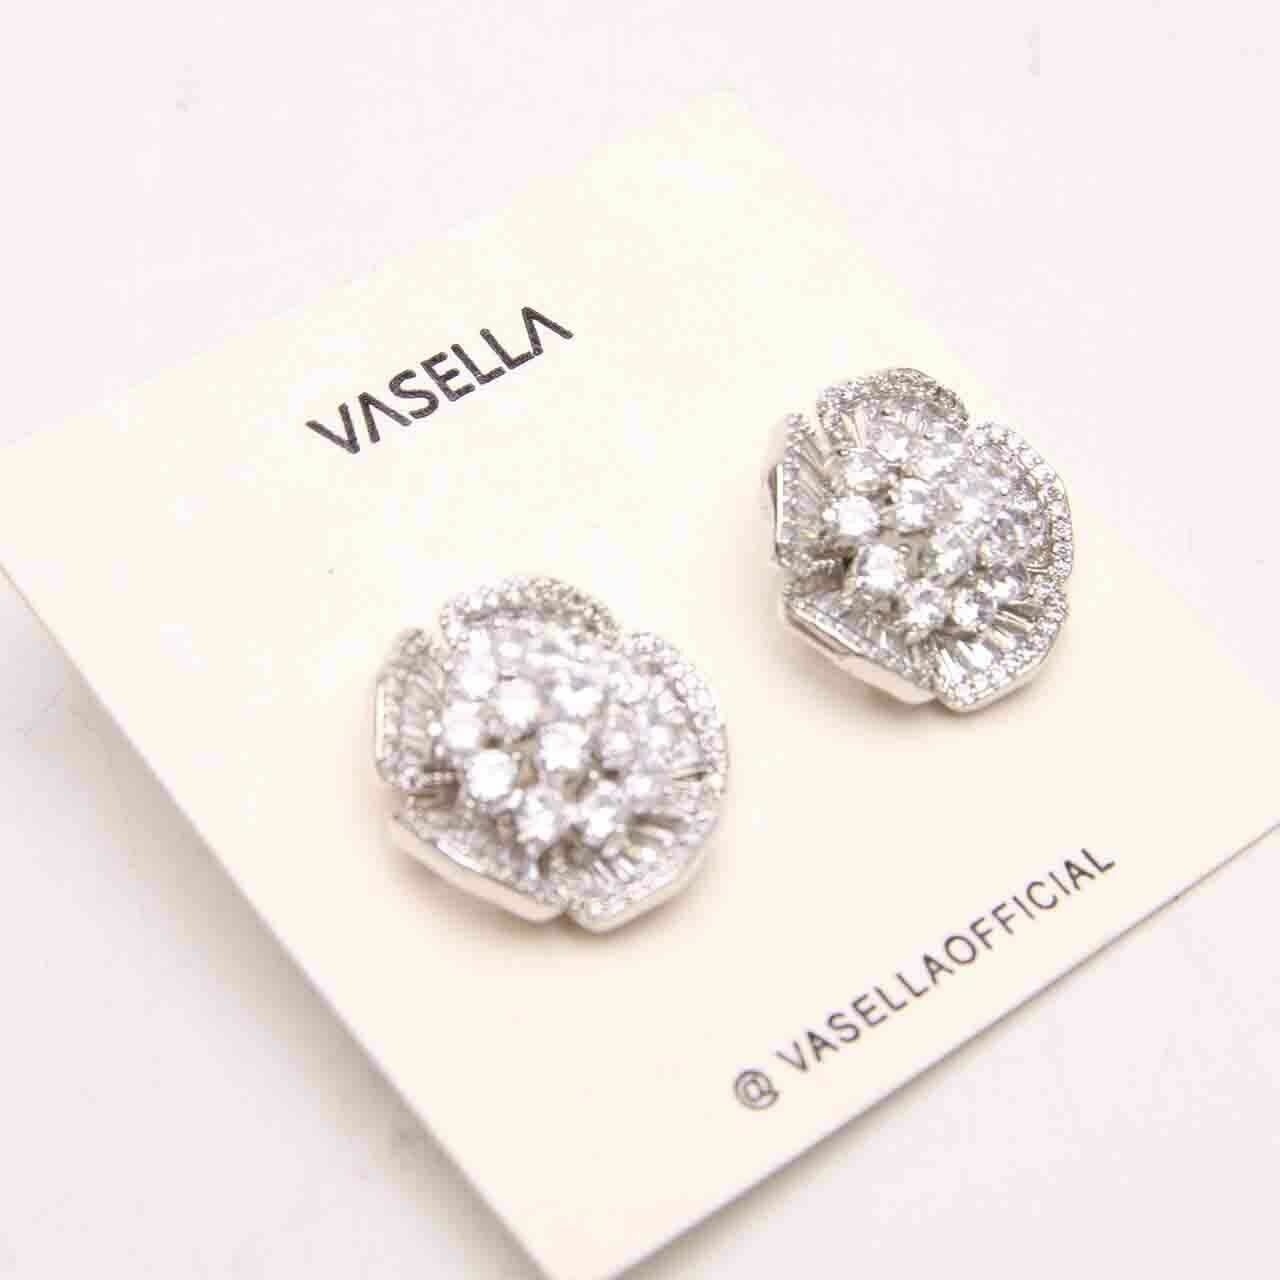 Vasella Silver Earrings Jewelry